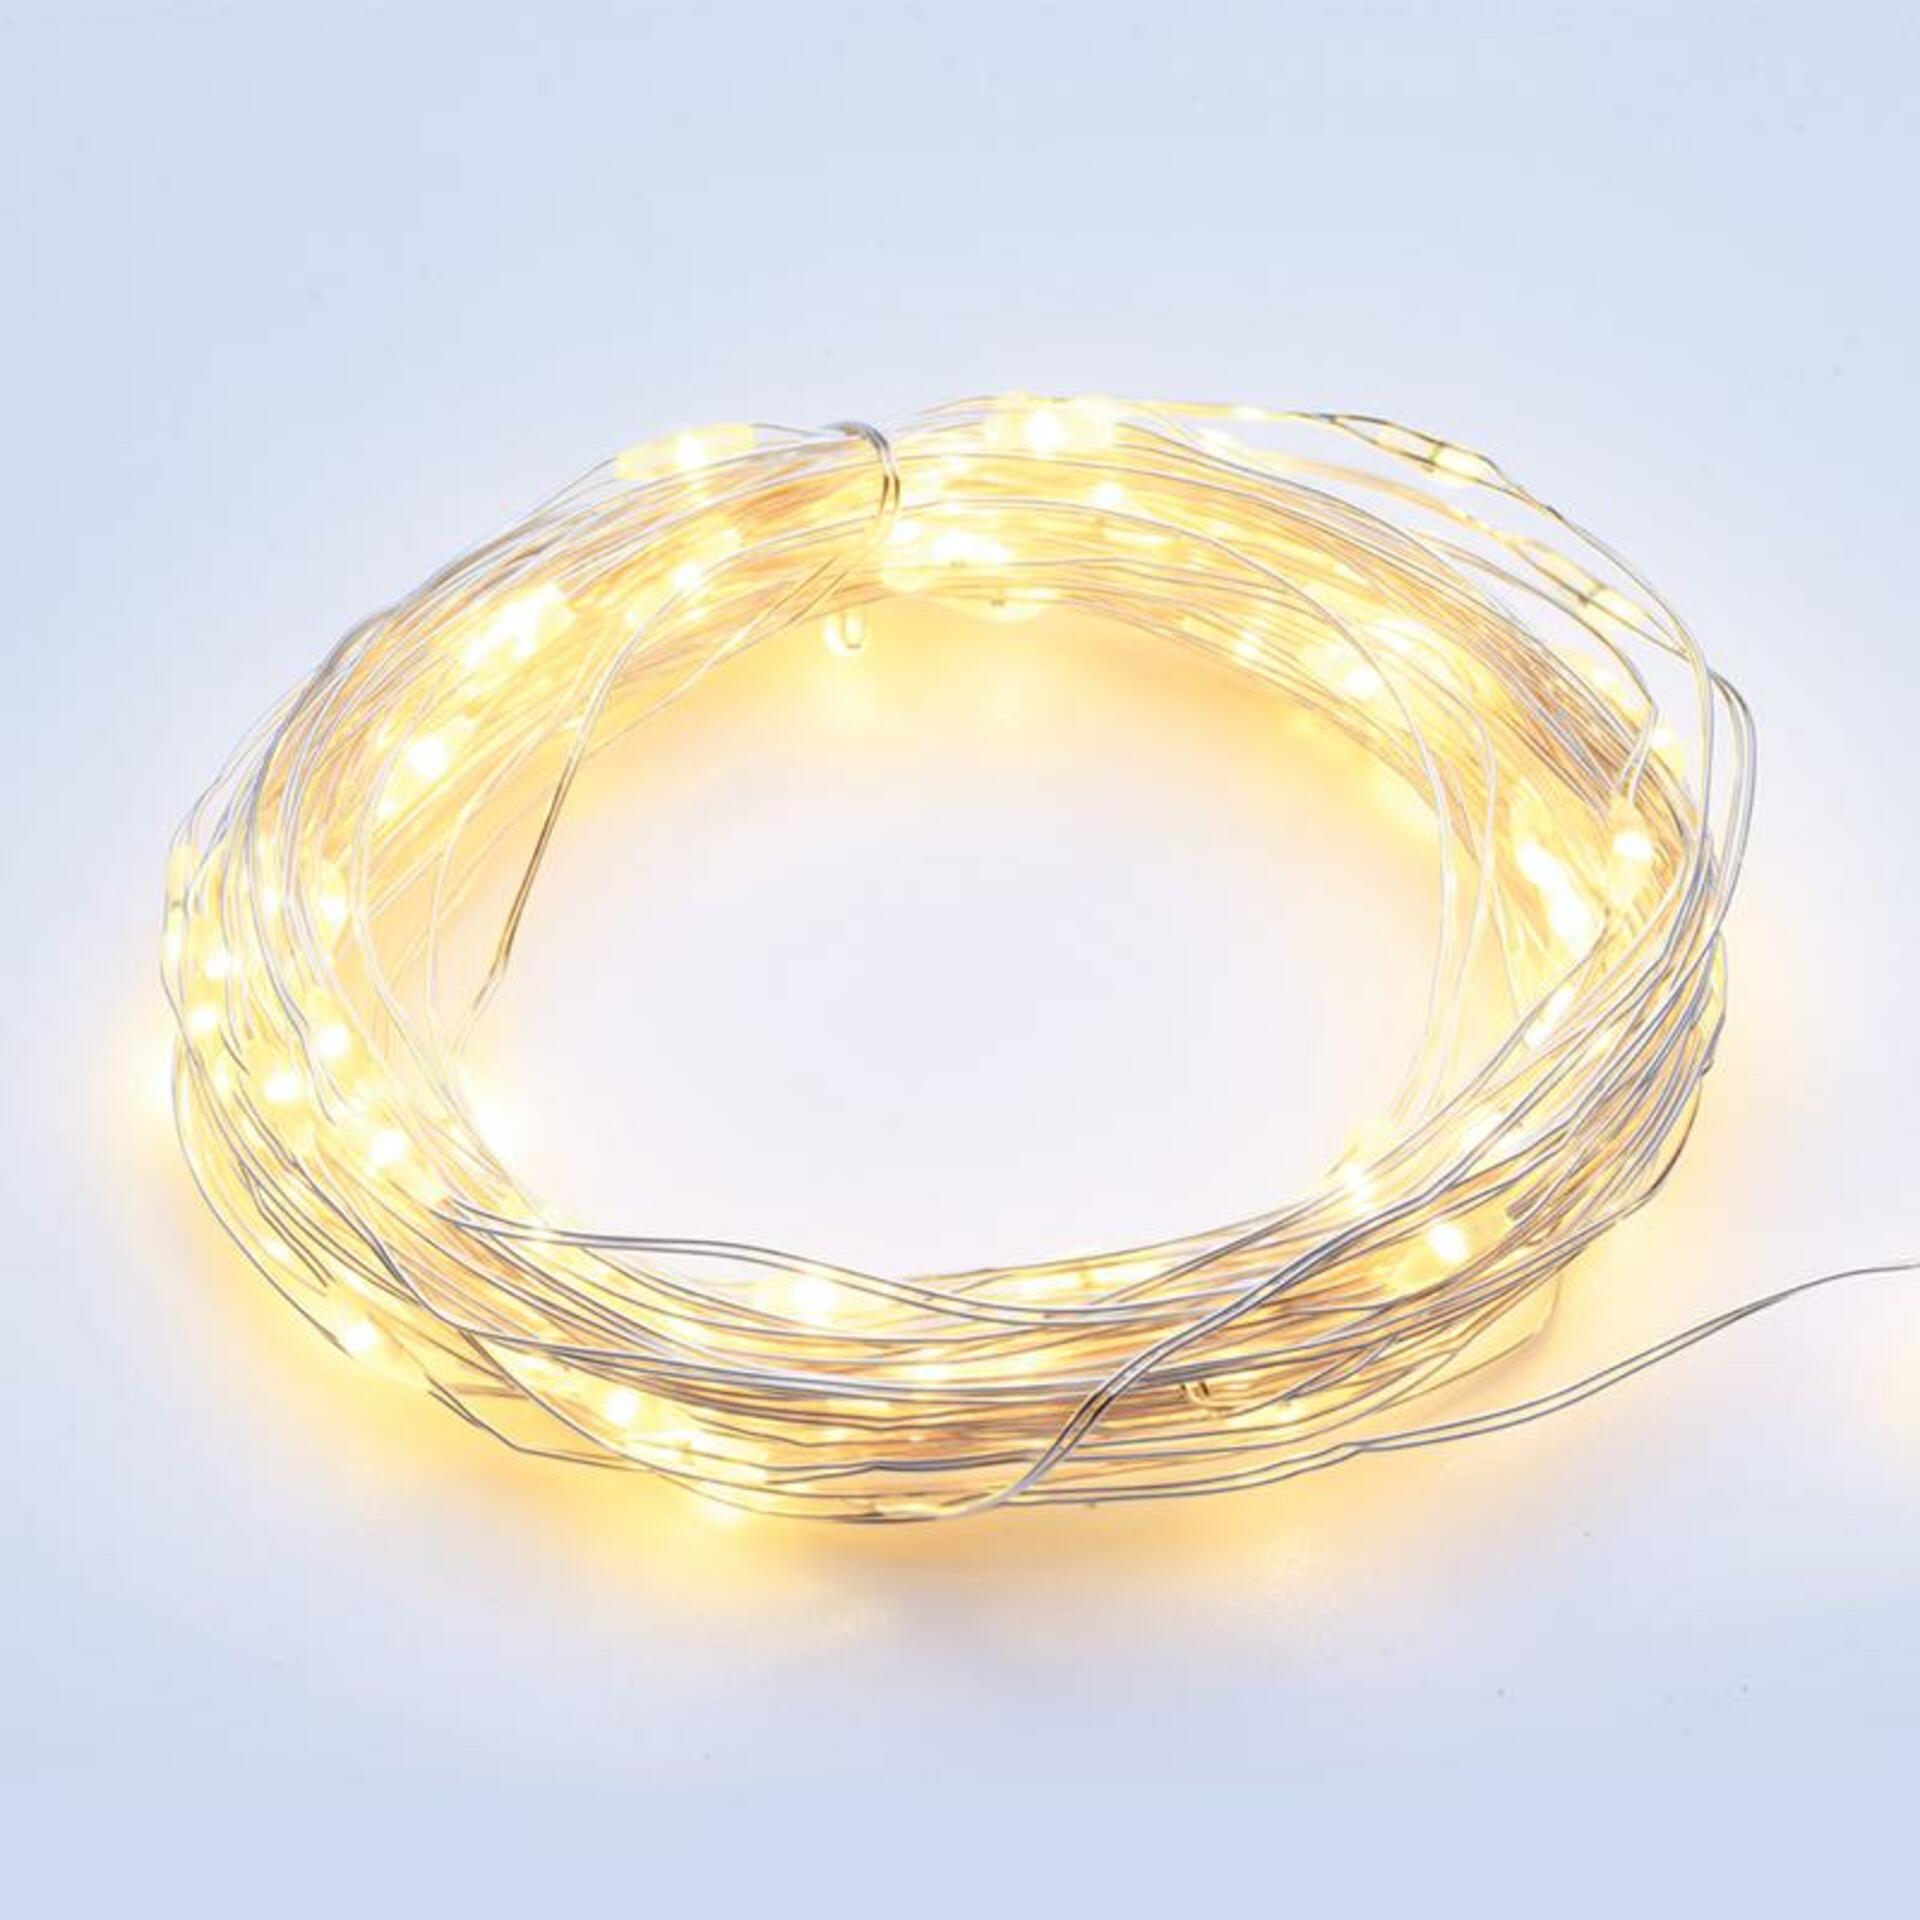 ACA Lighting 100 LED dekorační řetěz WW stříbrný měďený kabel 220-240V + 8 funkcí IP44 10m+3m 1.8W X01100112